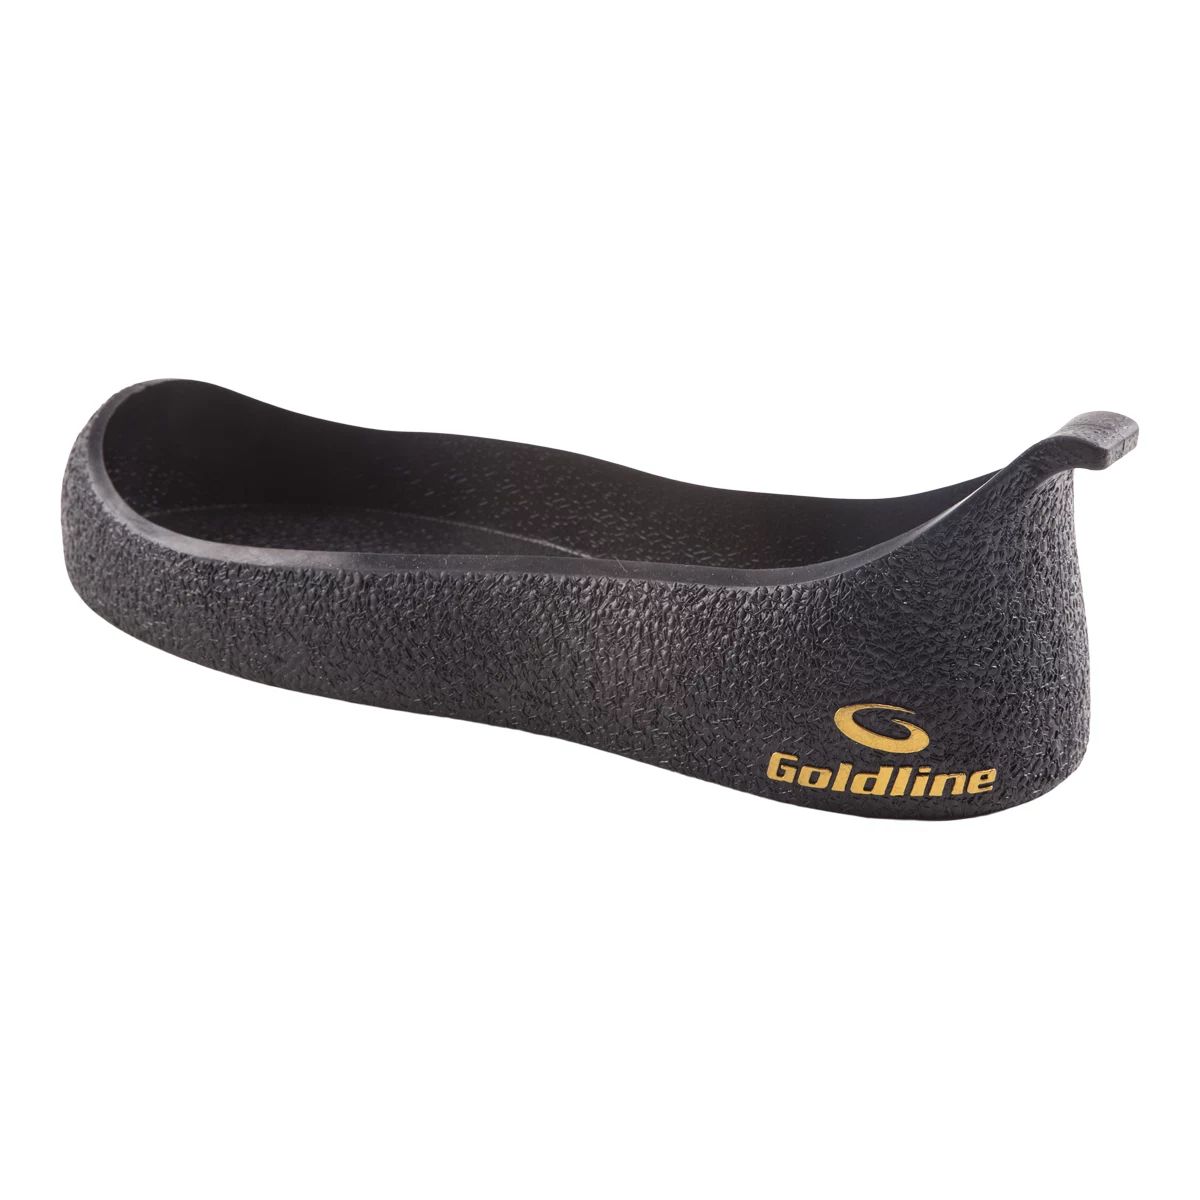 Goldline Antislider Slip On Gripper